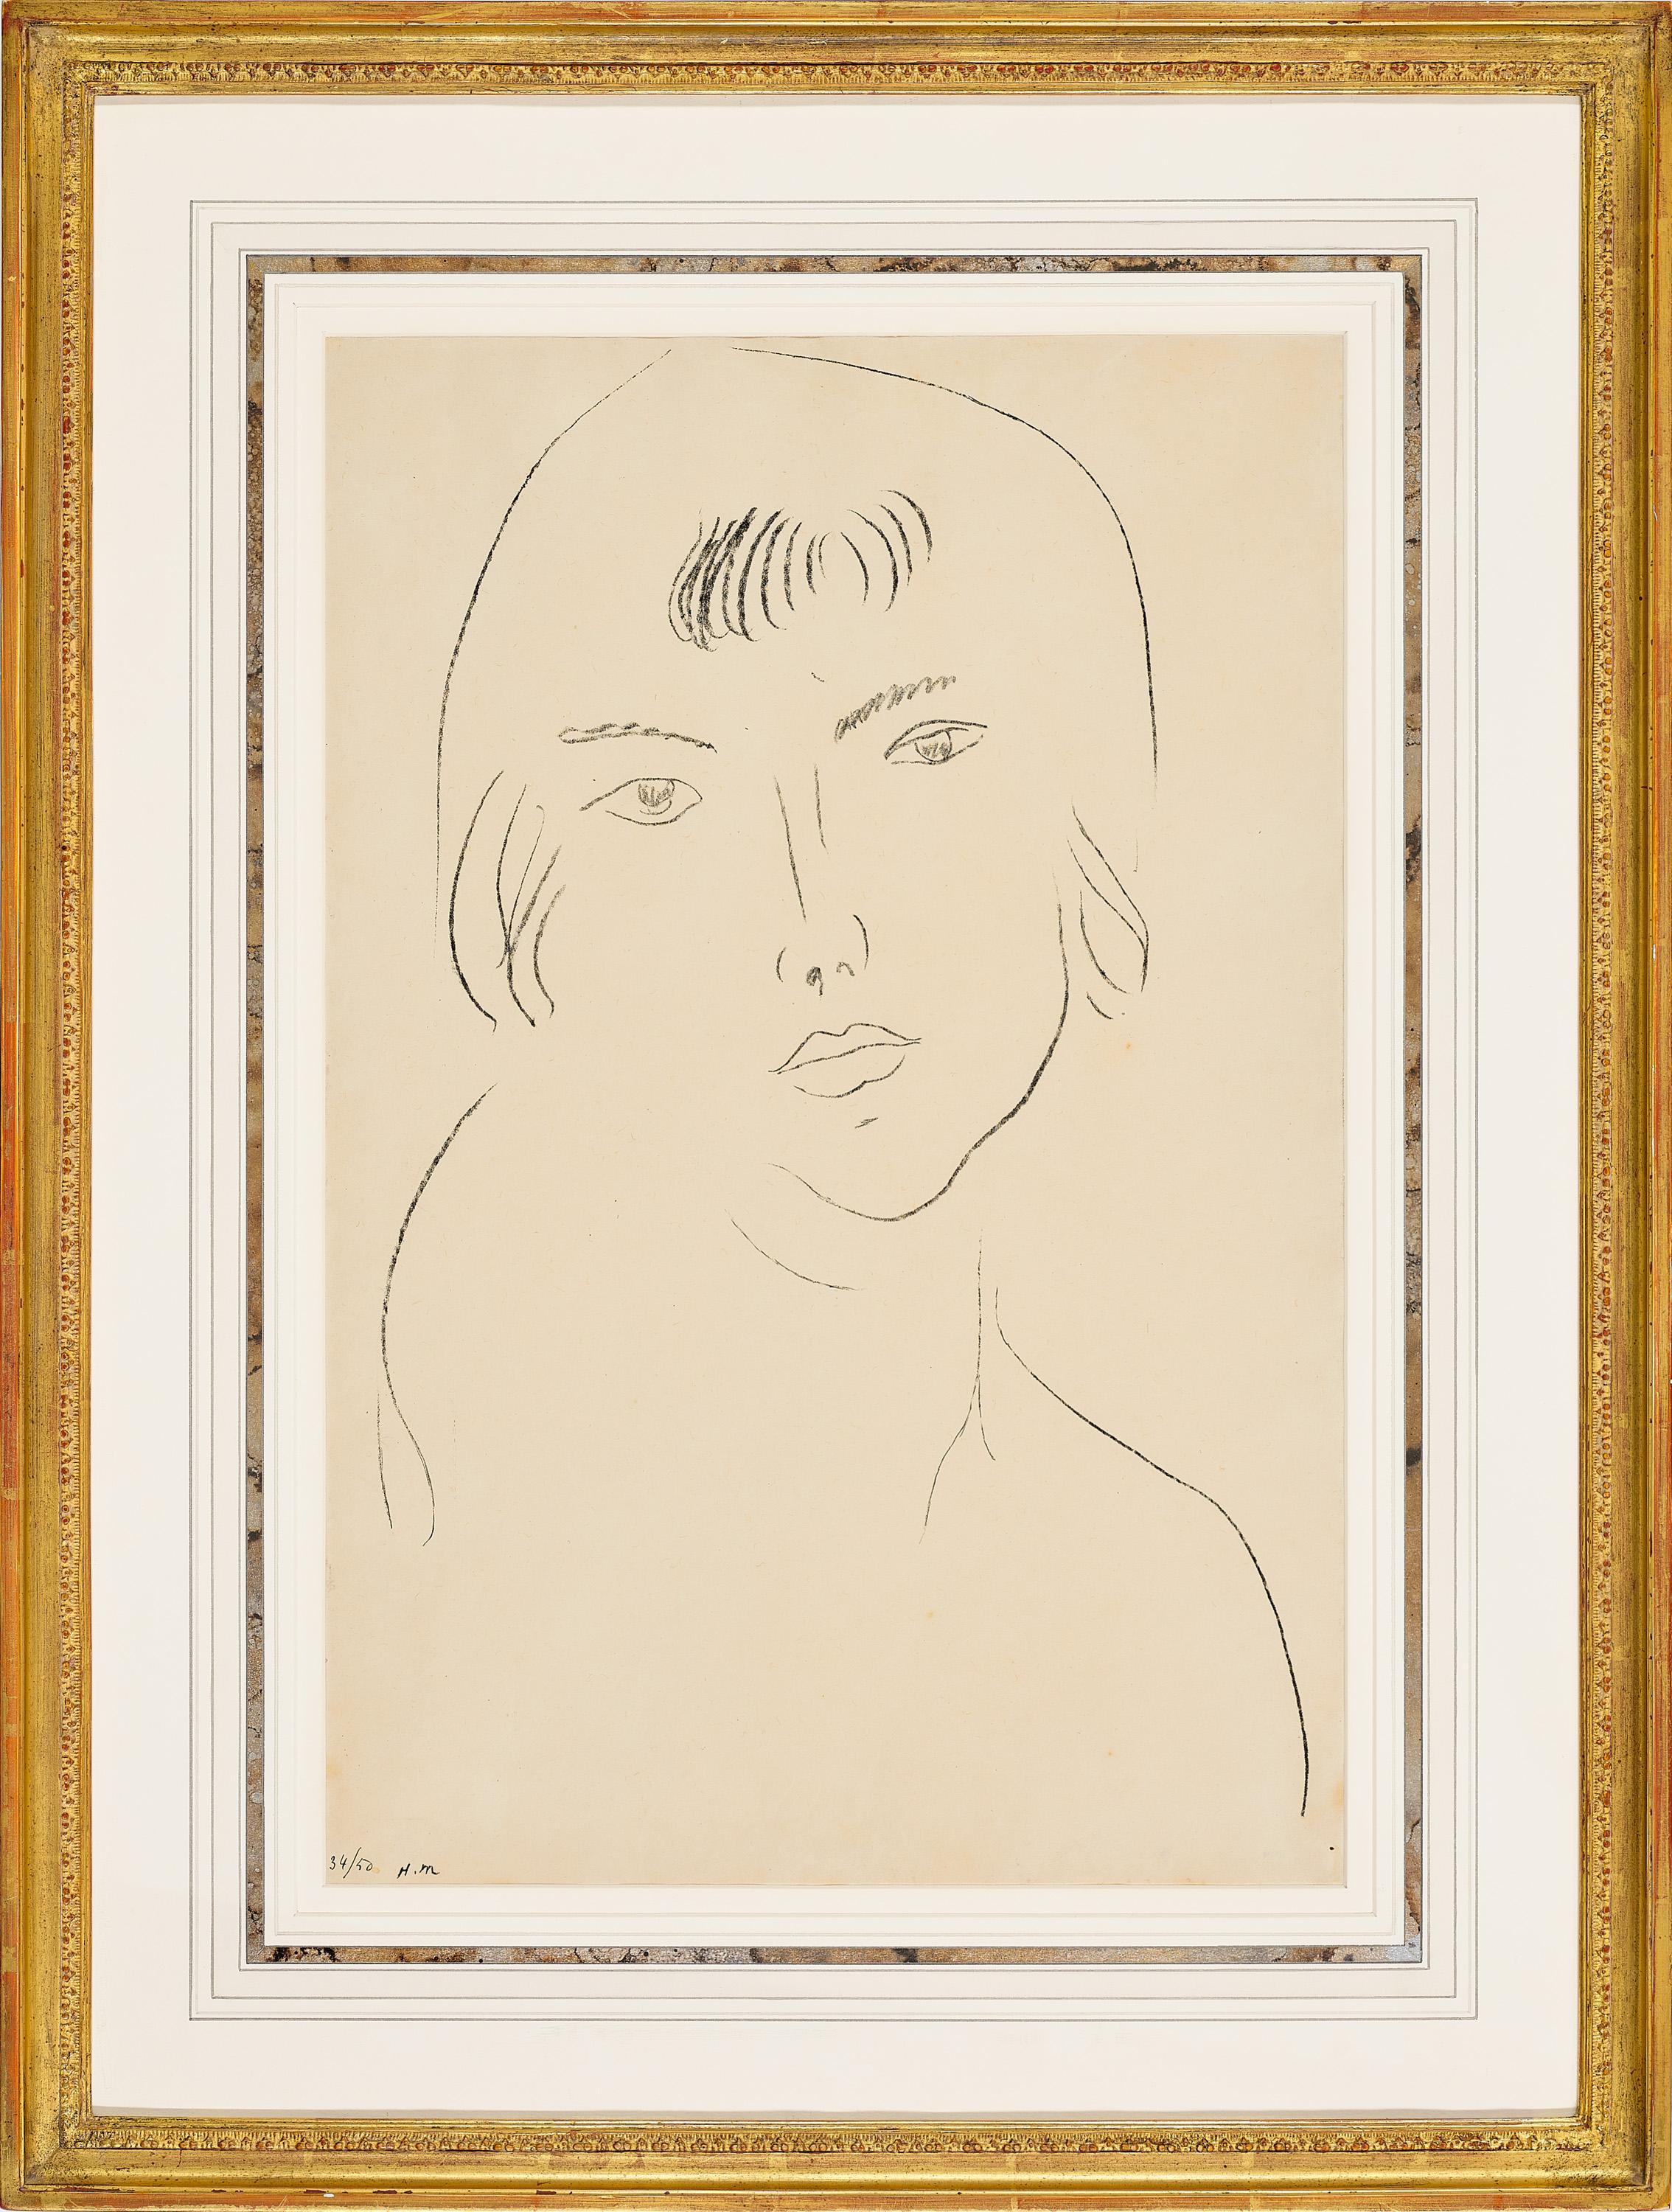 Henri Matisse 
Visage À La Frange, 1913
Lithographie auf Japonpapier
Auflage: 34/50
Handsigniert mit Initialen und nummeriert unterhalb des Bildes
Bildgröße 49,0 x 32,5 cm 
Rahmengröße 70,0 x 53,0 cm 

LITERATUR
Duthuit-Matisse, M. und Duthuit, C.,